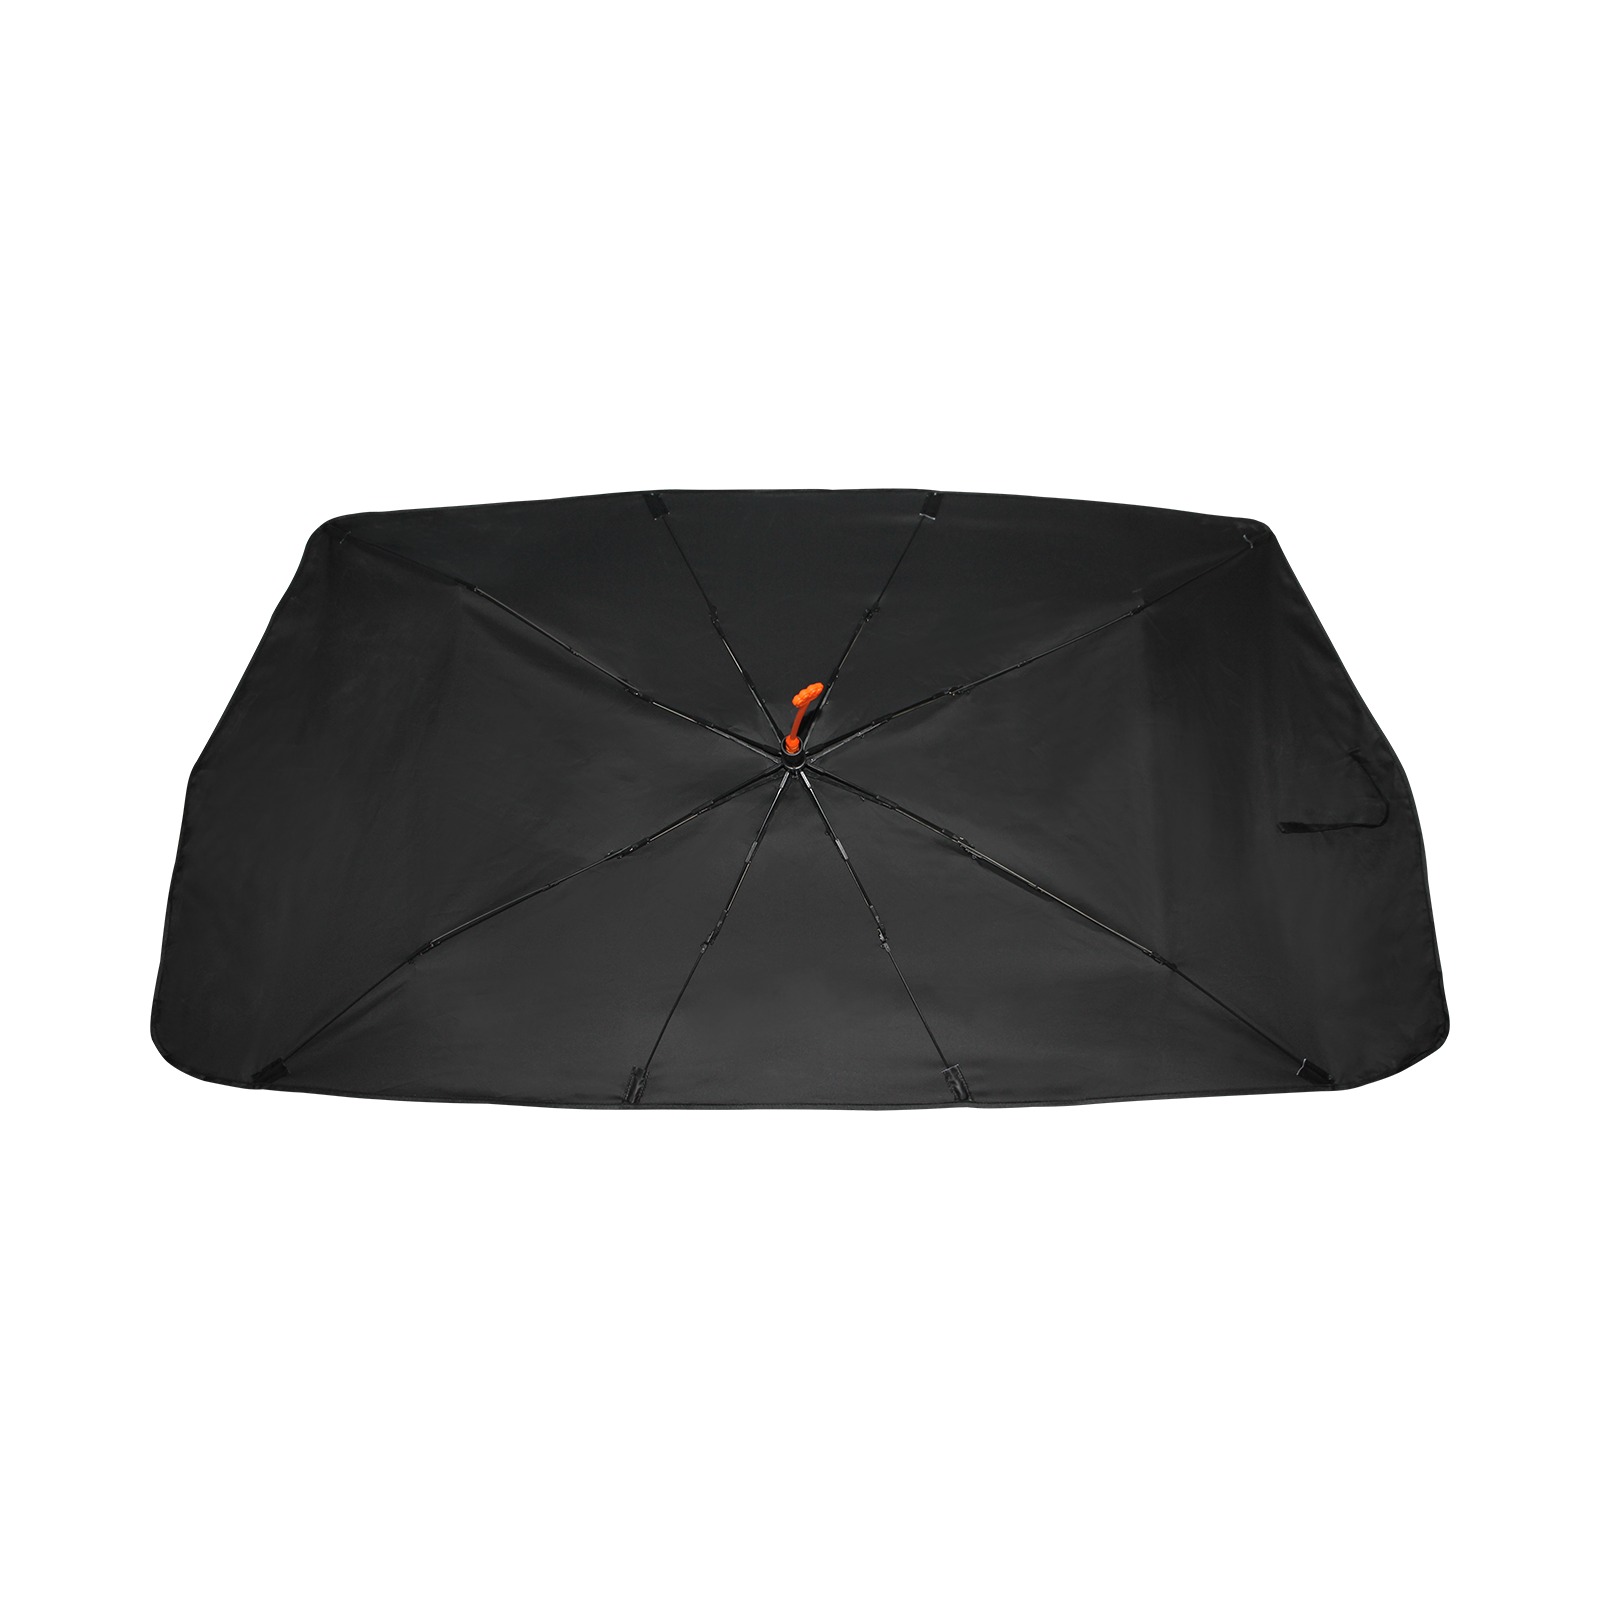 Protect You. Car Sun Shade Umbrella 58"x29"